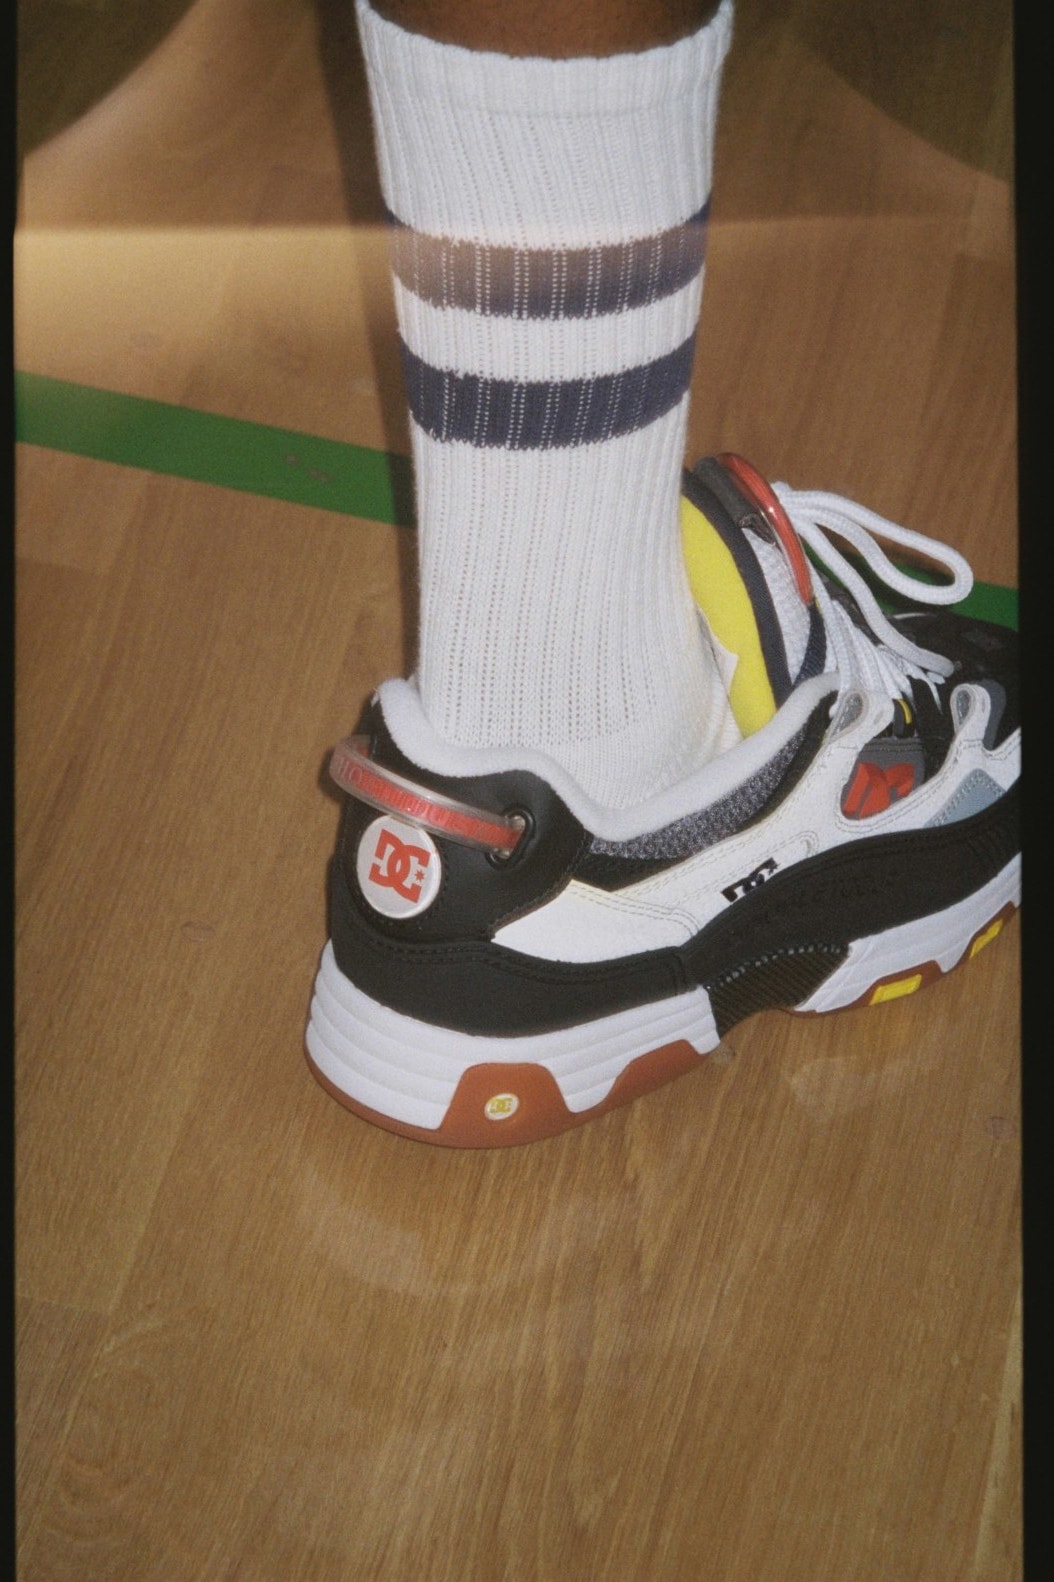 doublet x DC Shoes Hybrid Shoe Sneaker Collaboration Release Information First Closer Look Masayuki Ino Lynx OG Kalis OG Legacy OG Skateboarding Culture Japan